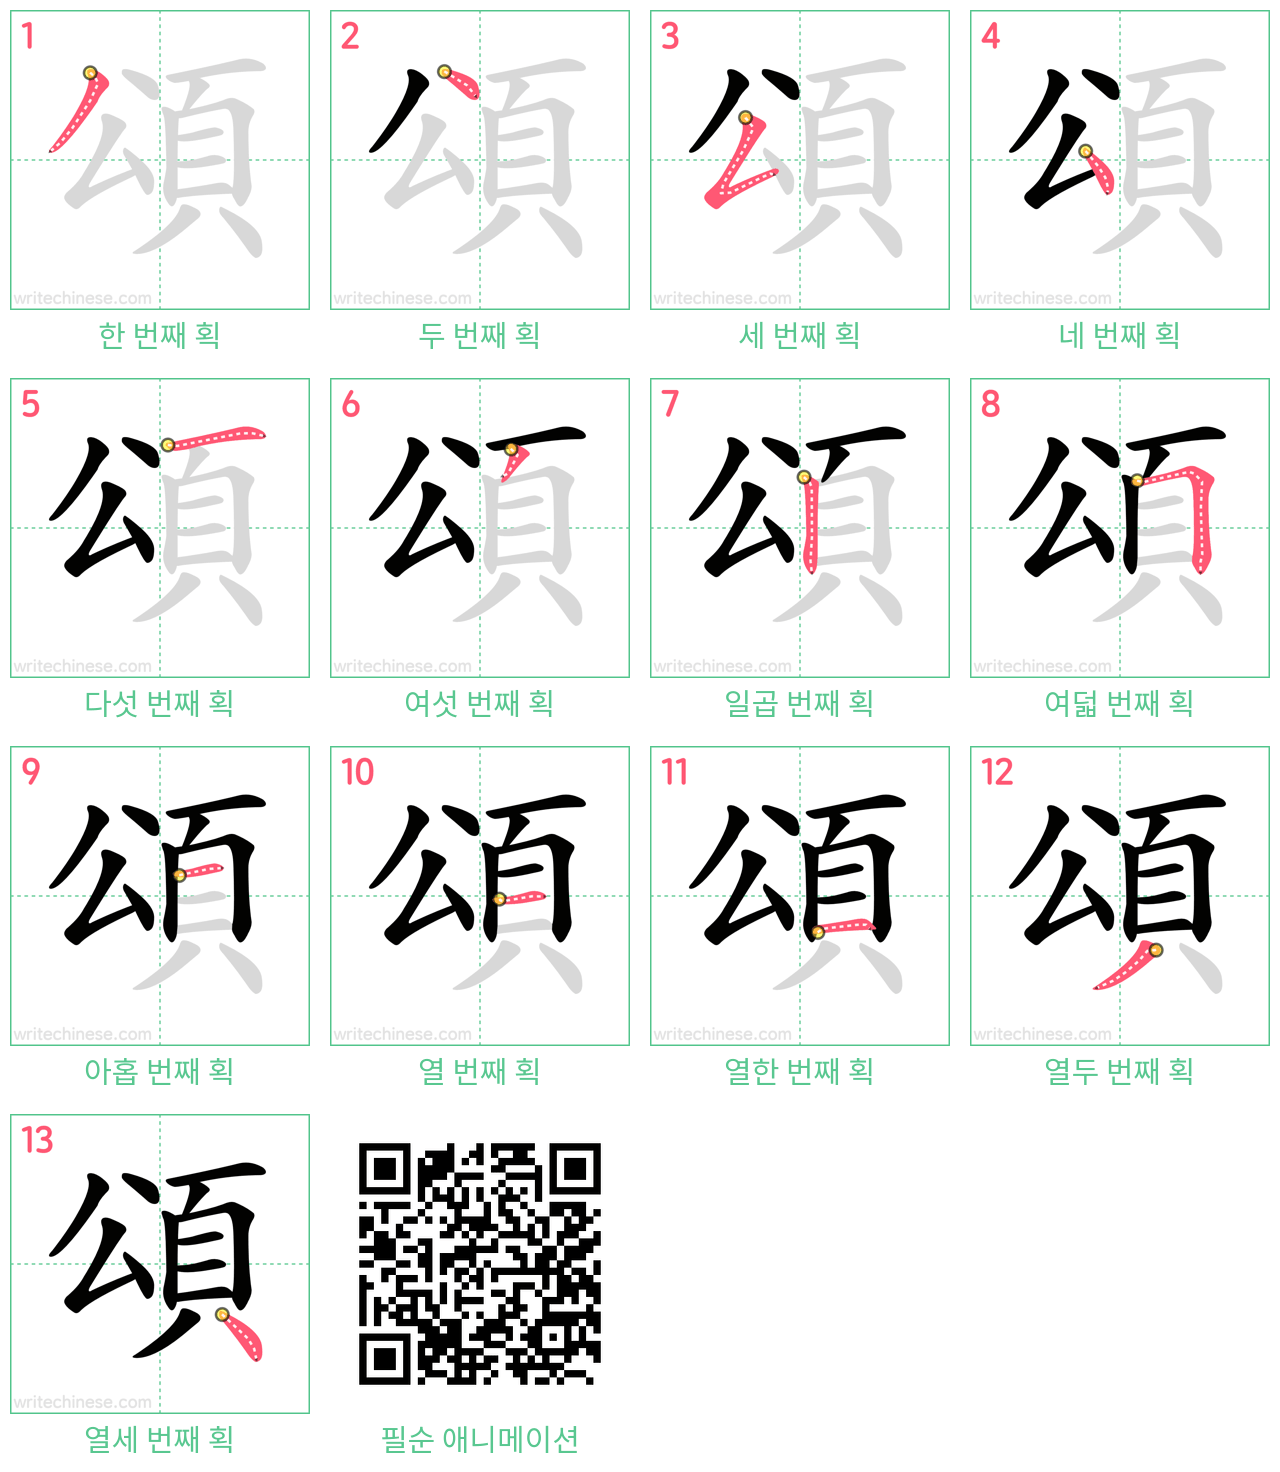 頌 step-by-step stroke order diagrams